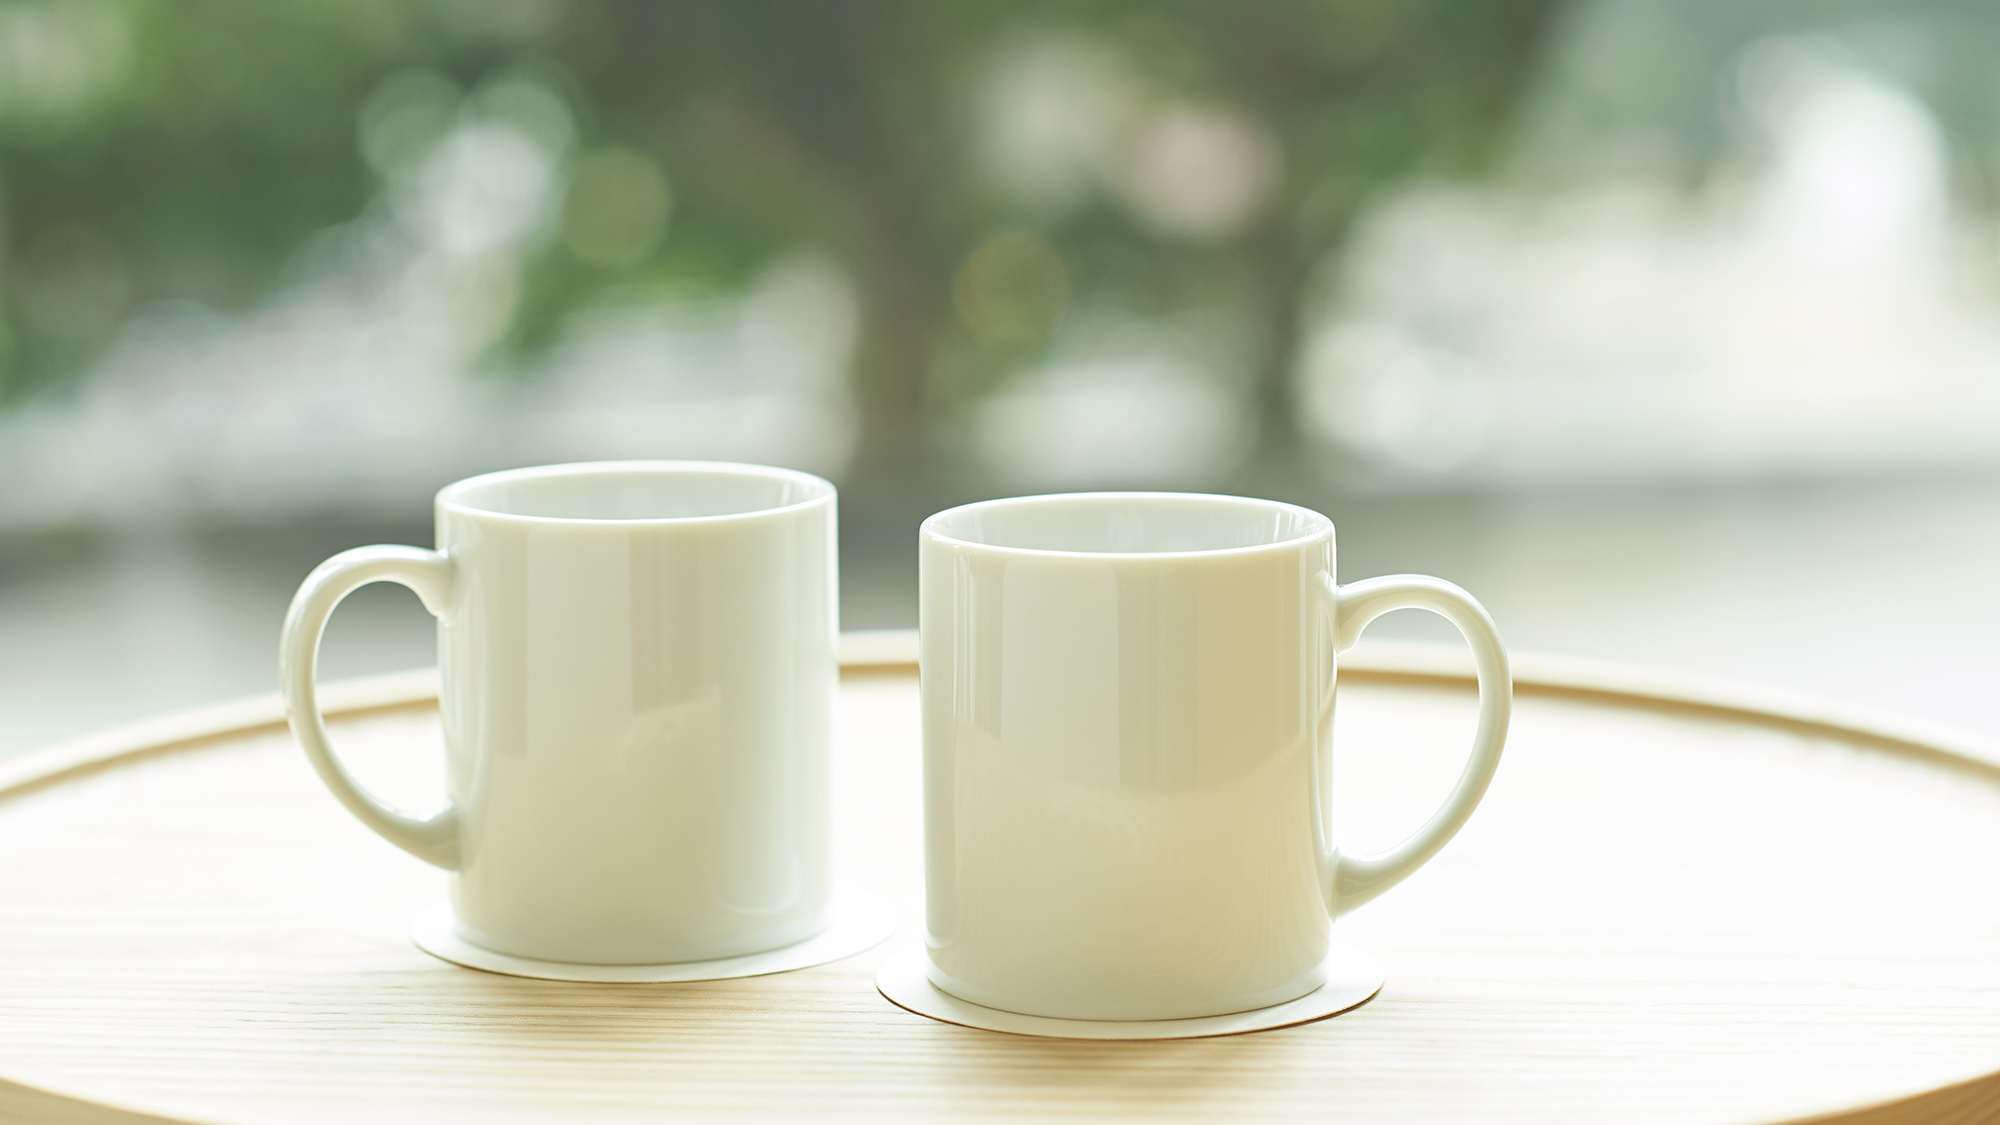 ・【客室備品】備え付けのマグカップでお茶やコーヒーをお飲みいただけます